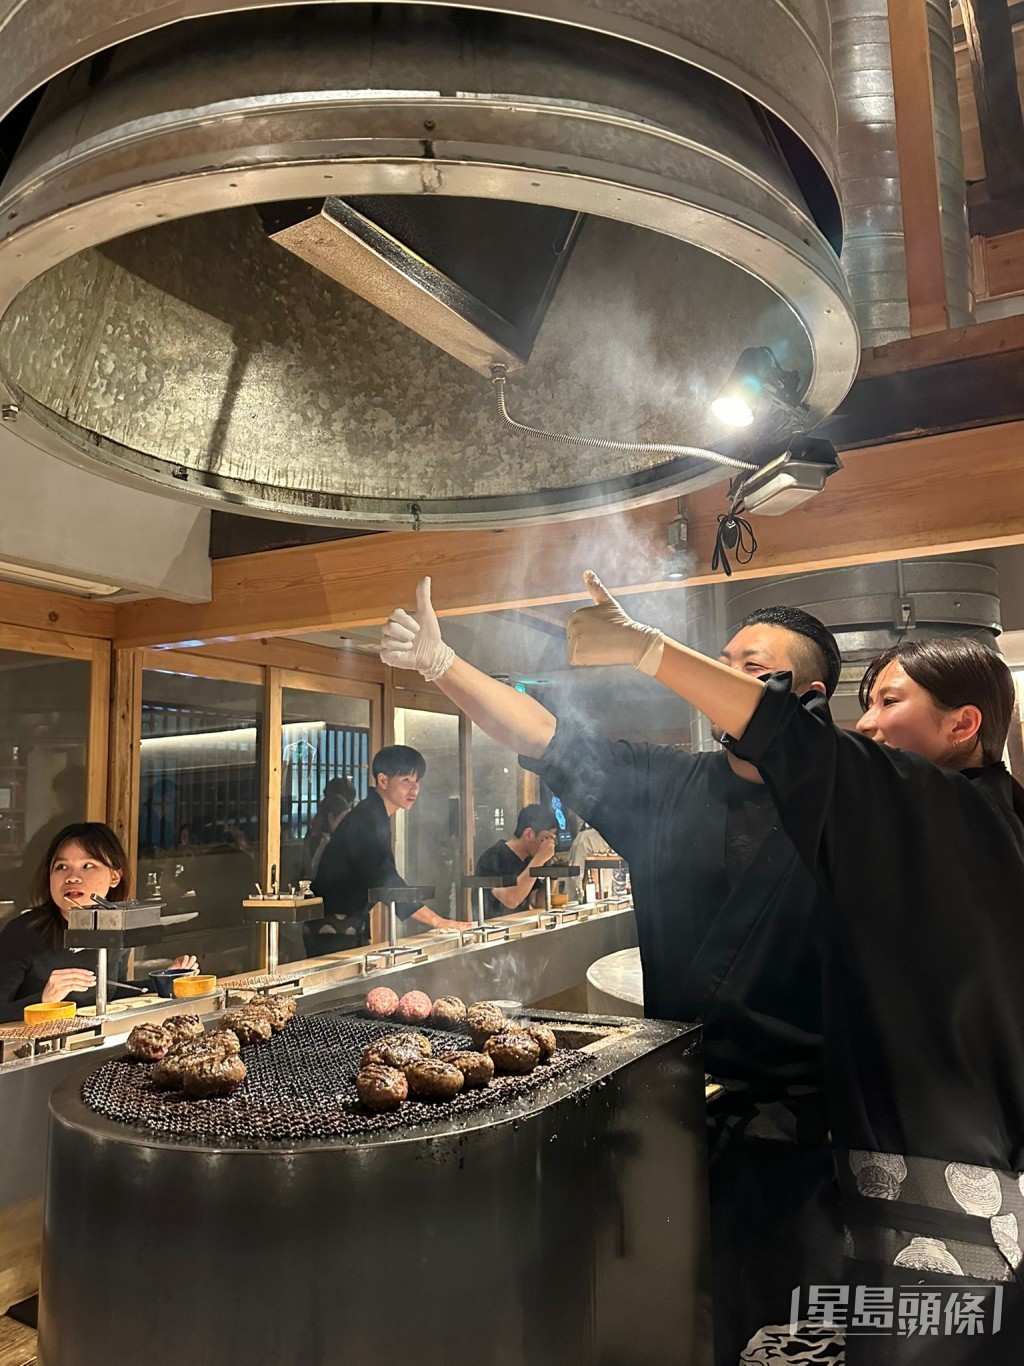 黄杰龙表示为开业认真准备，送员工到日本培训整个月。图为京都“挽肉と米”餐厅